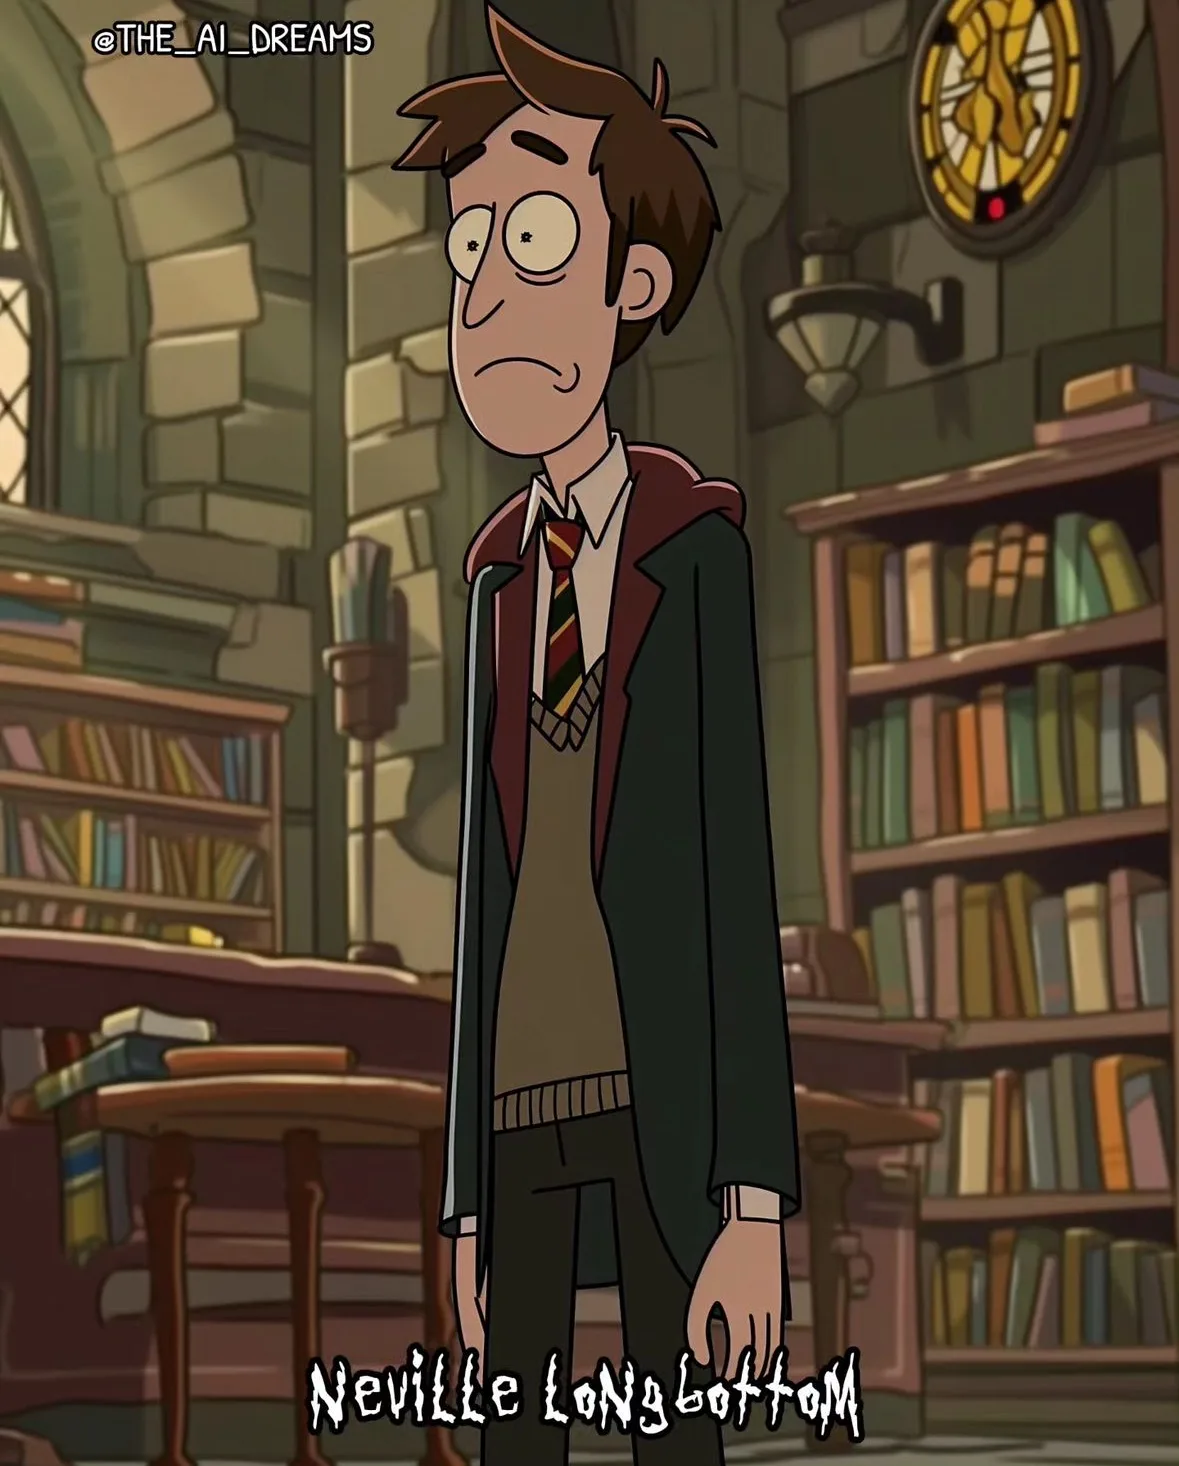 ตัวละคร แฮร์รี่ พอตเตอร์ เวอร์ชั่นการ์ตูน Rick And Morty